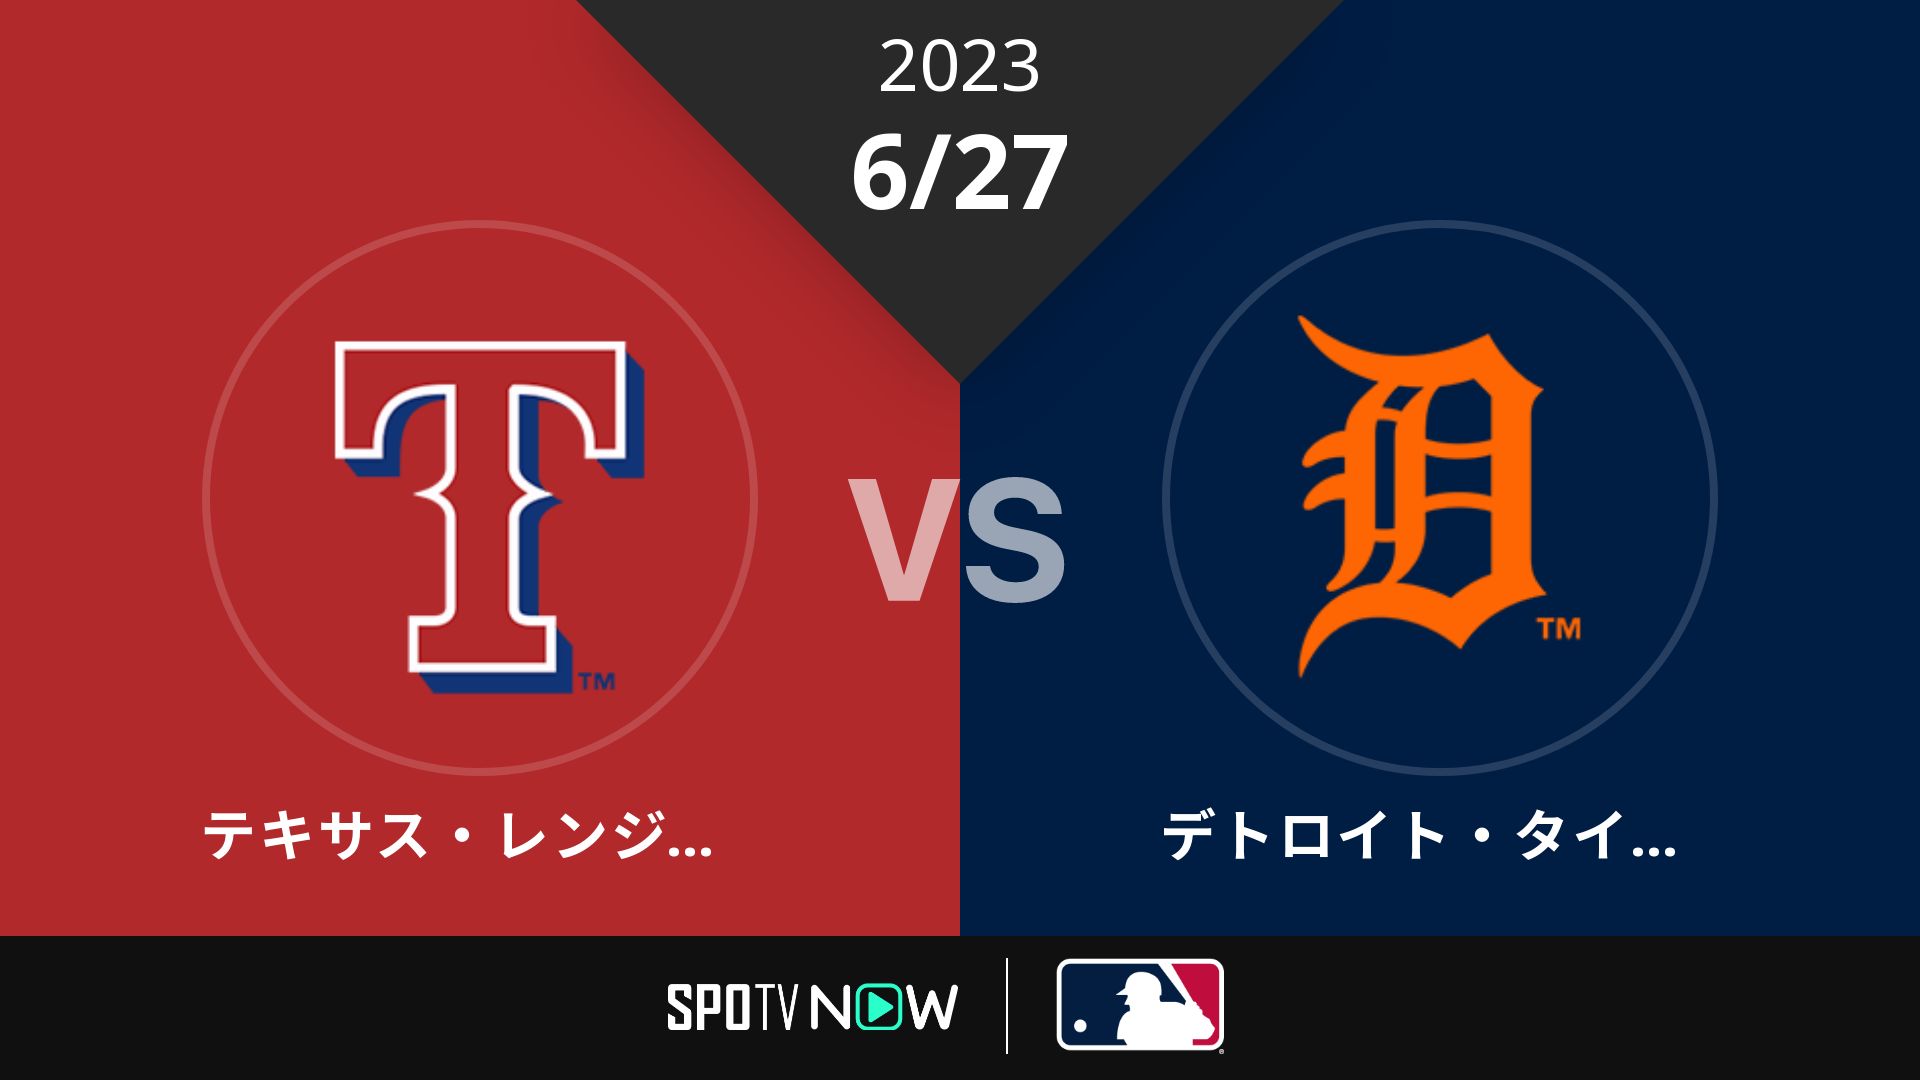 2023/6/27 レンジャーズ vs タイガース [MLB]